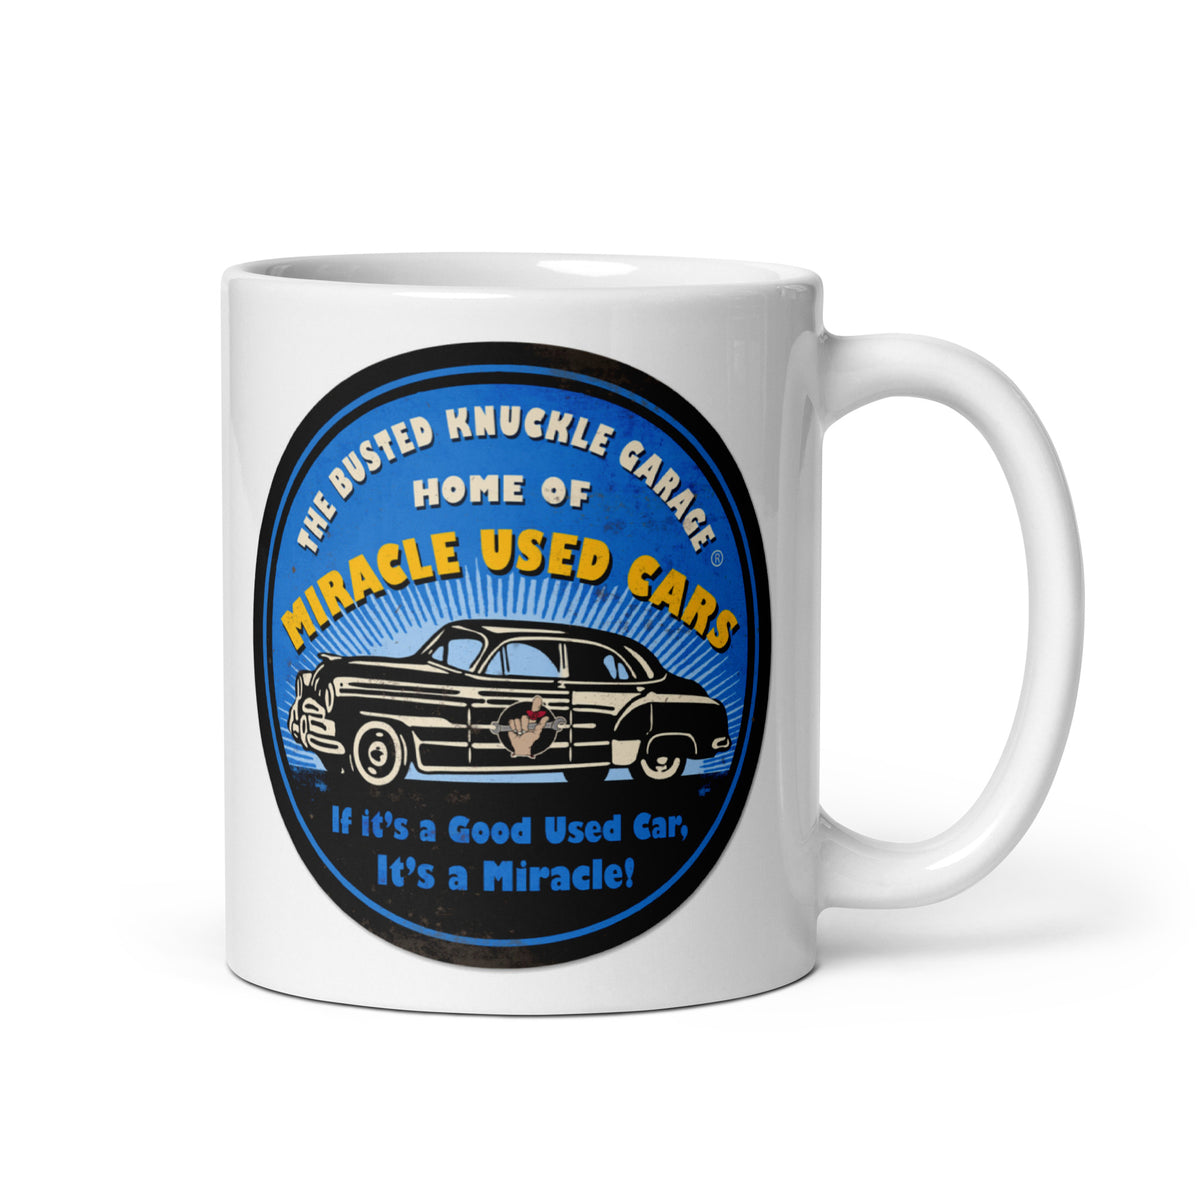 Busted Knuckle Garage Used Cars Coffee Mug